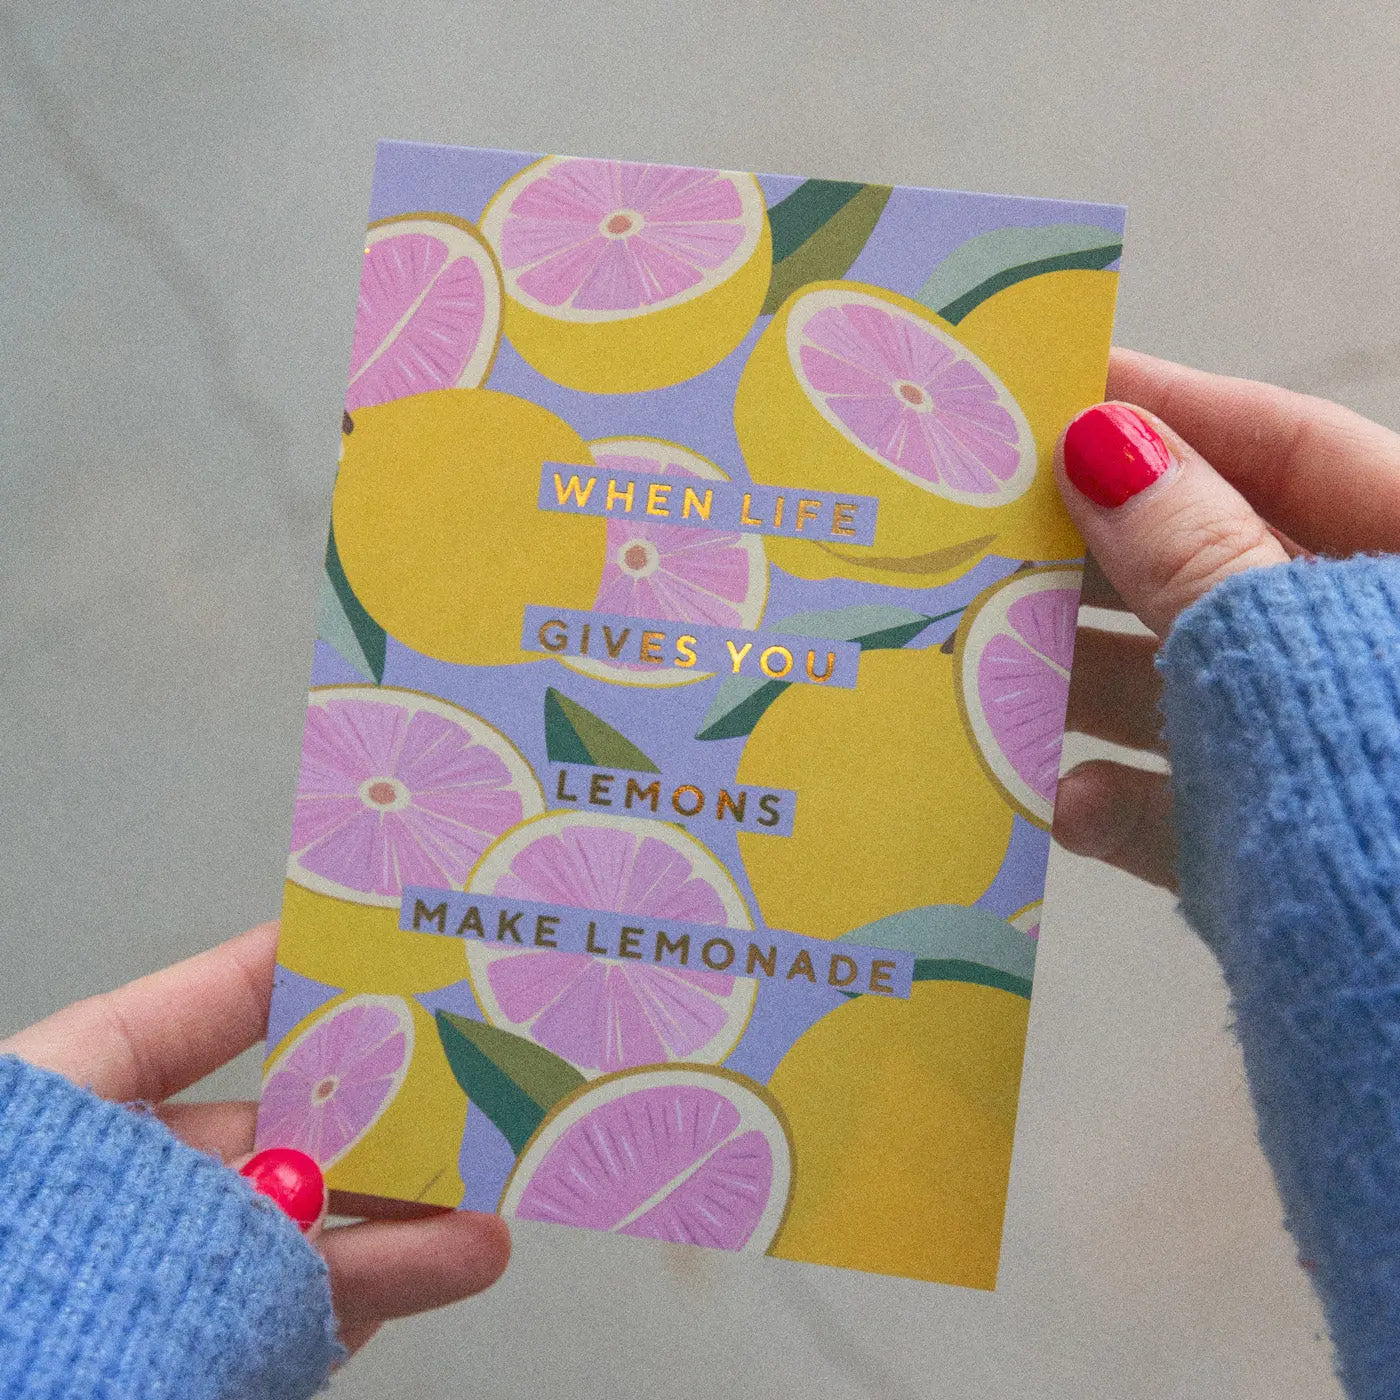 Make Lemonade Postcard